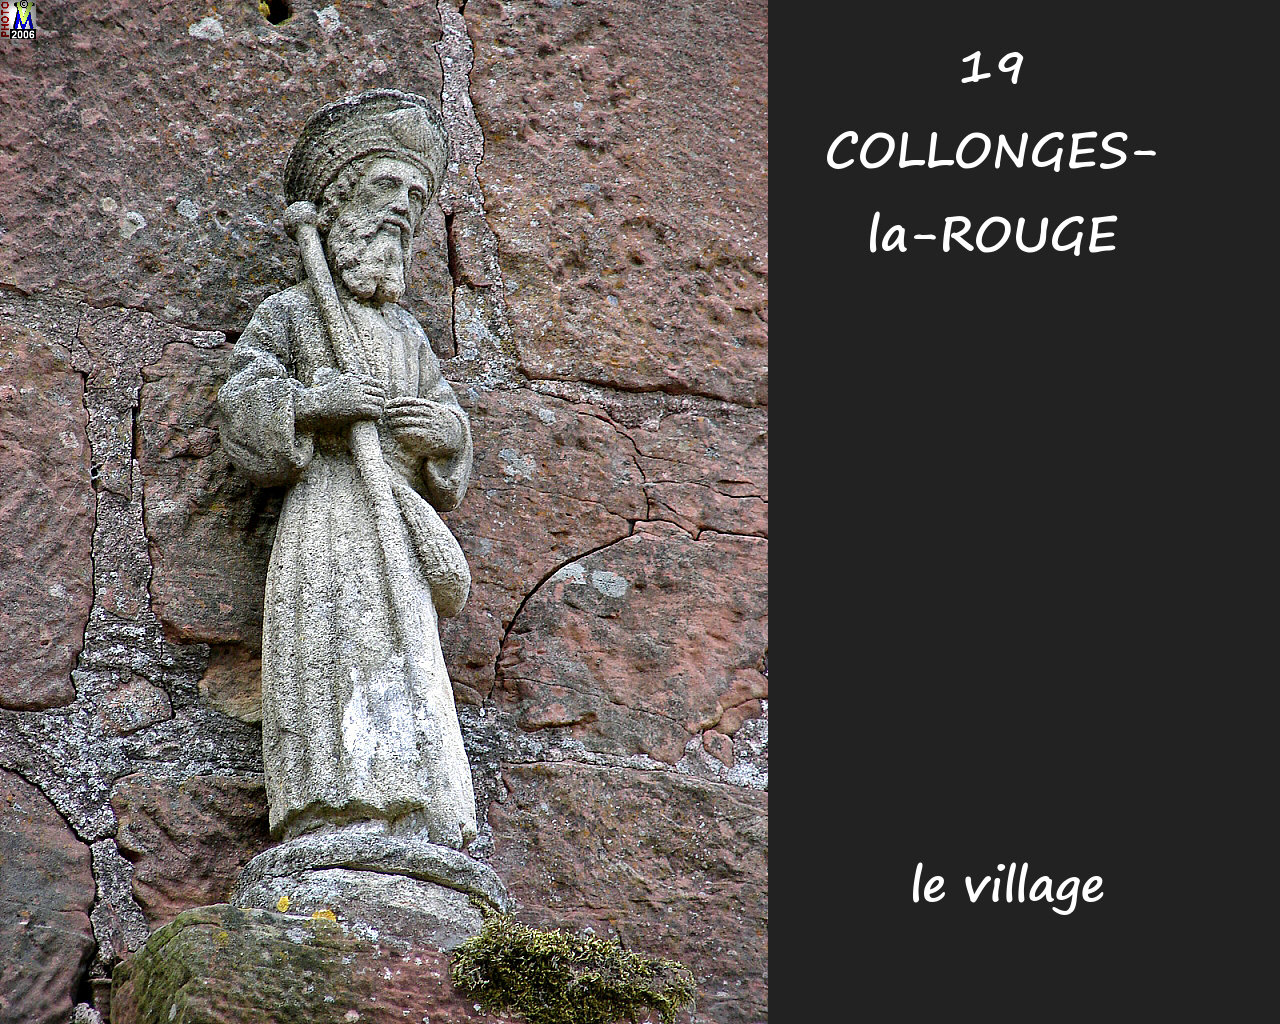 19COLLONGES-ROUGE_village_122.jpg